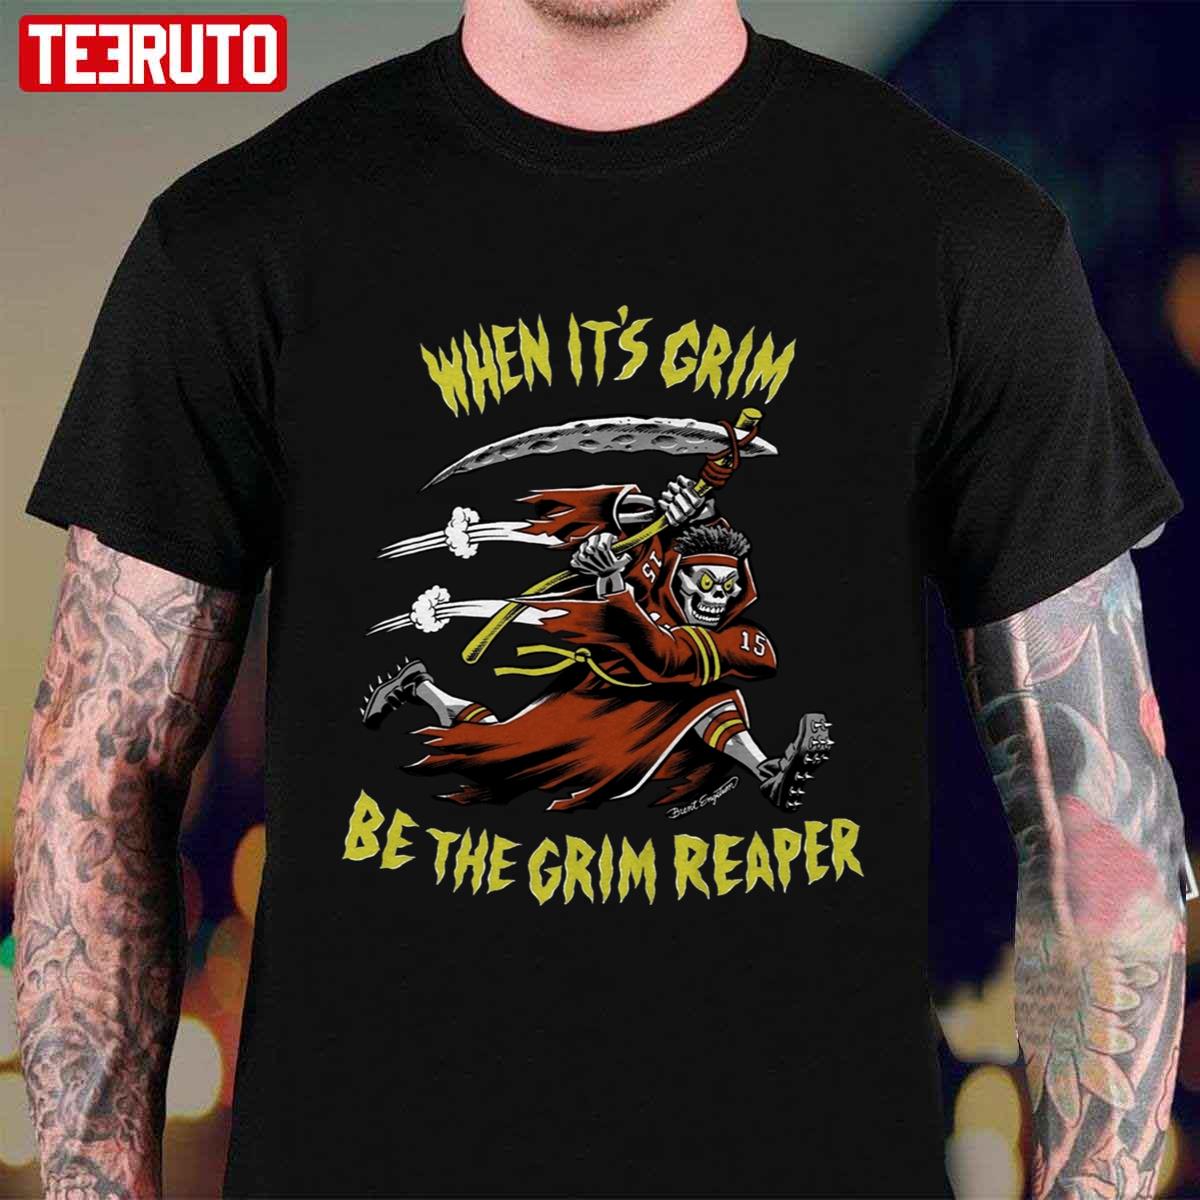 grim reaper lakers shirt